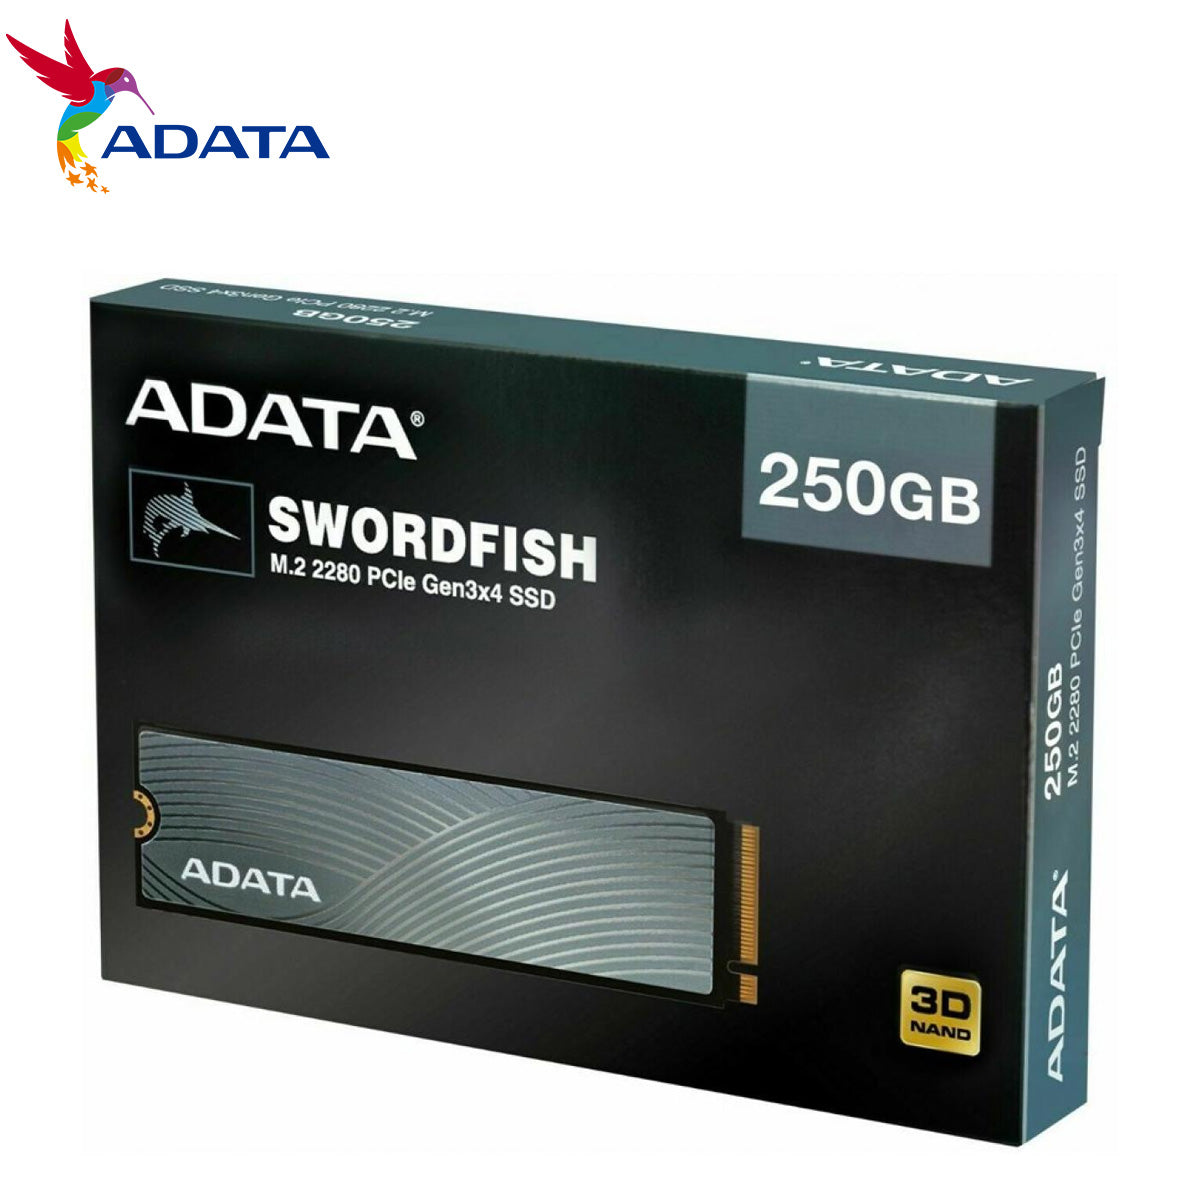 ADATA SWORDFISH 250GB COLOR BOX